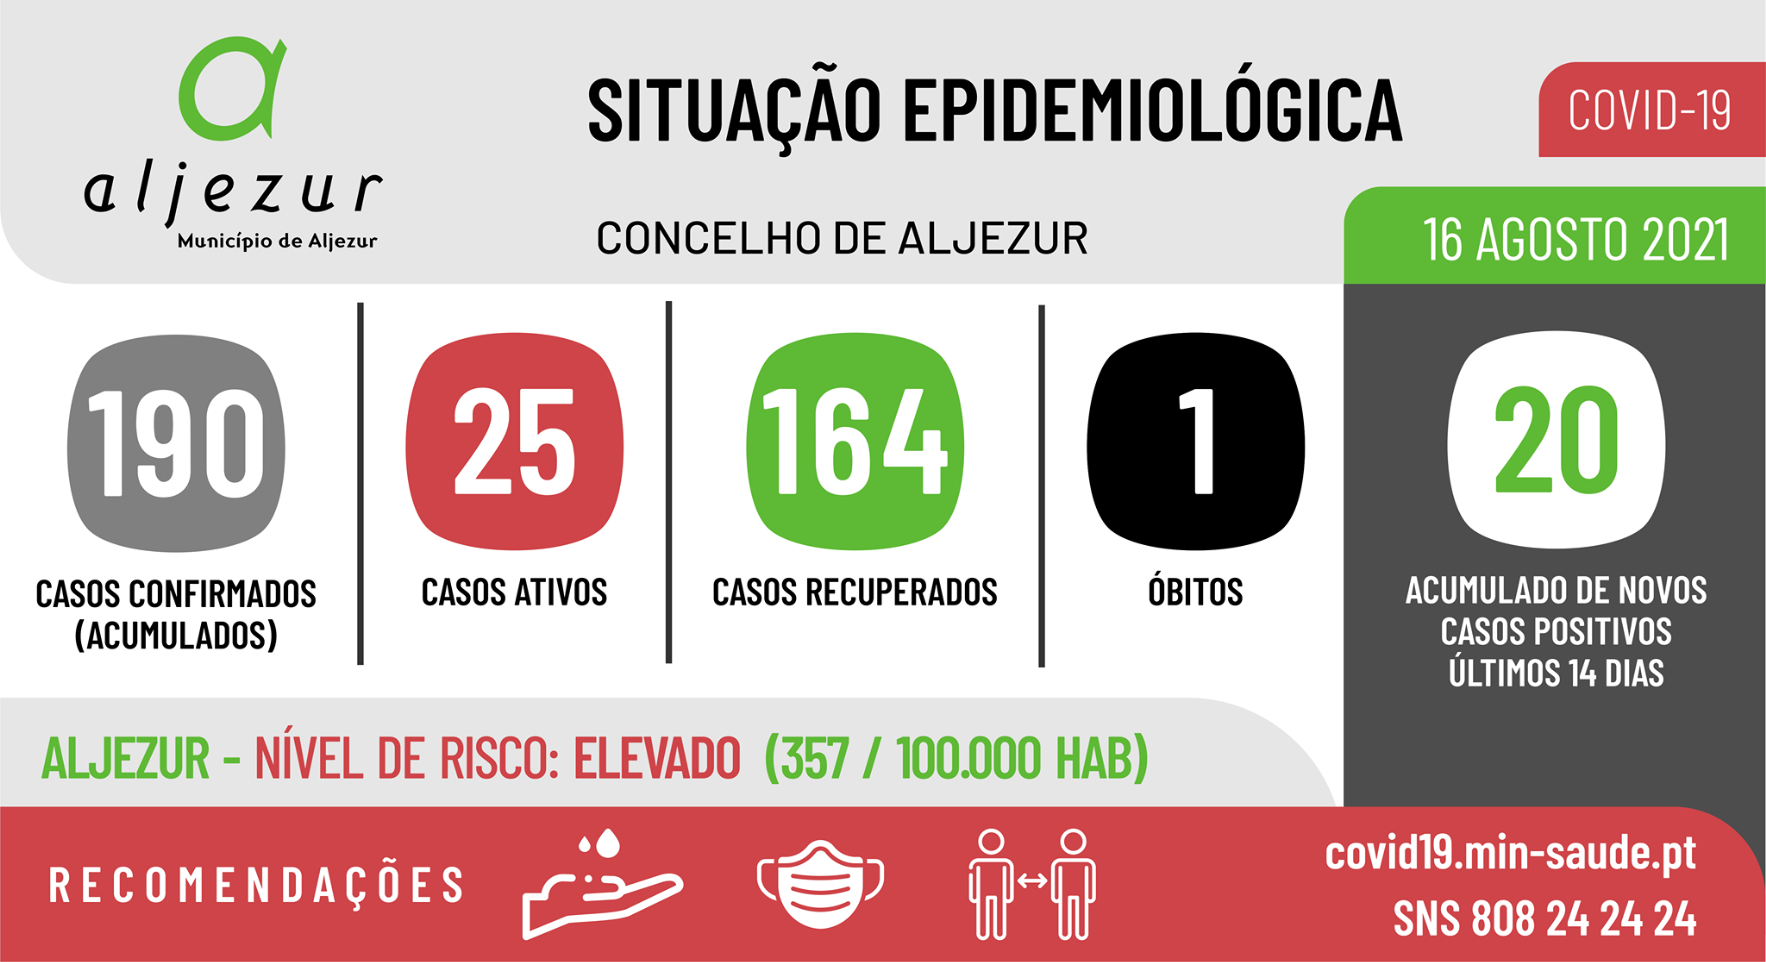 COVID-19: Situação epidemiológica em Aljezur [16/08/2021]